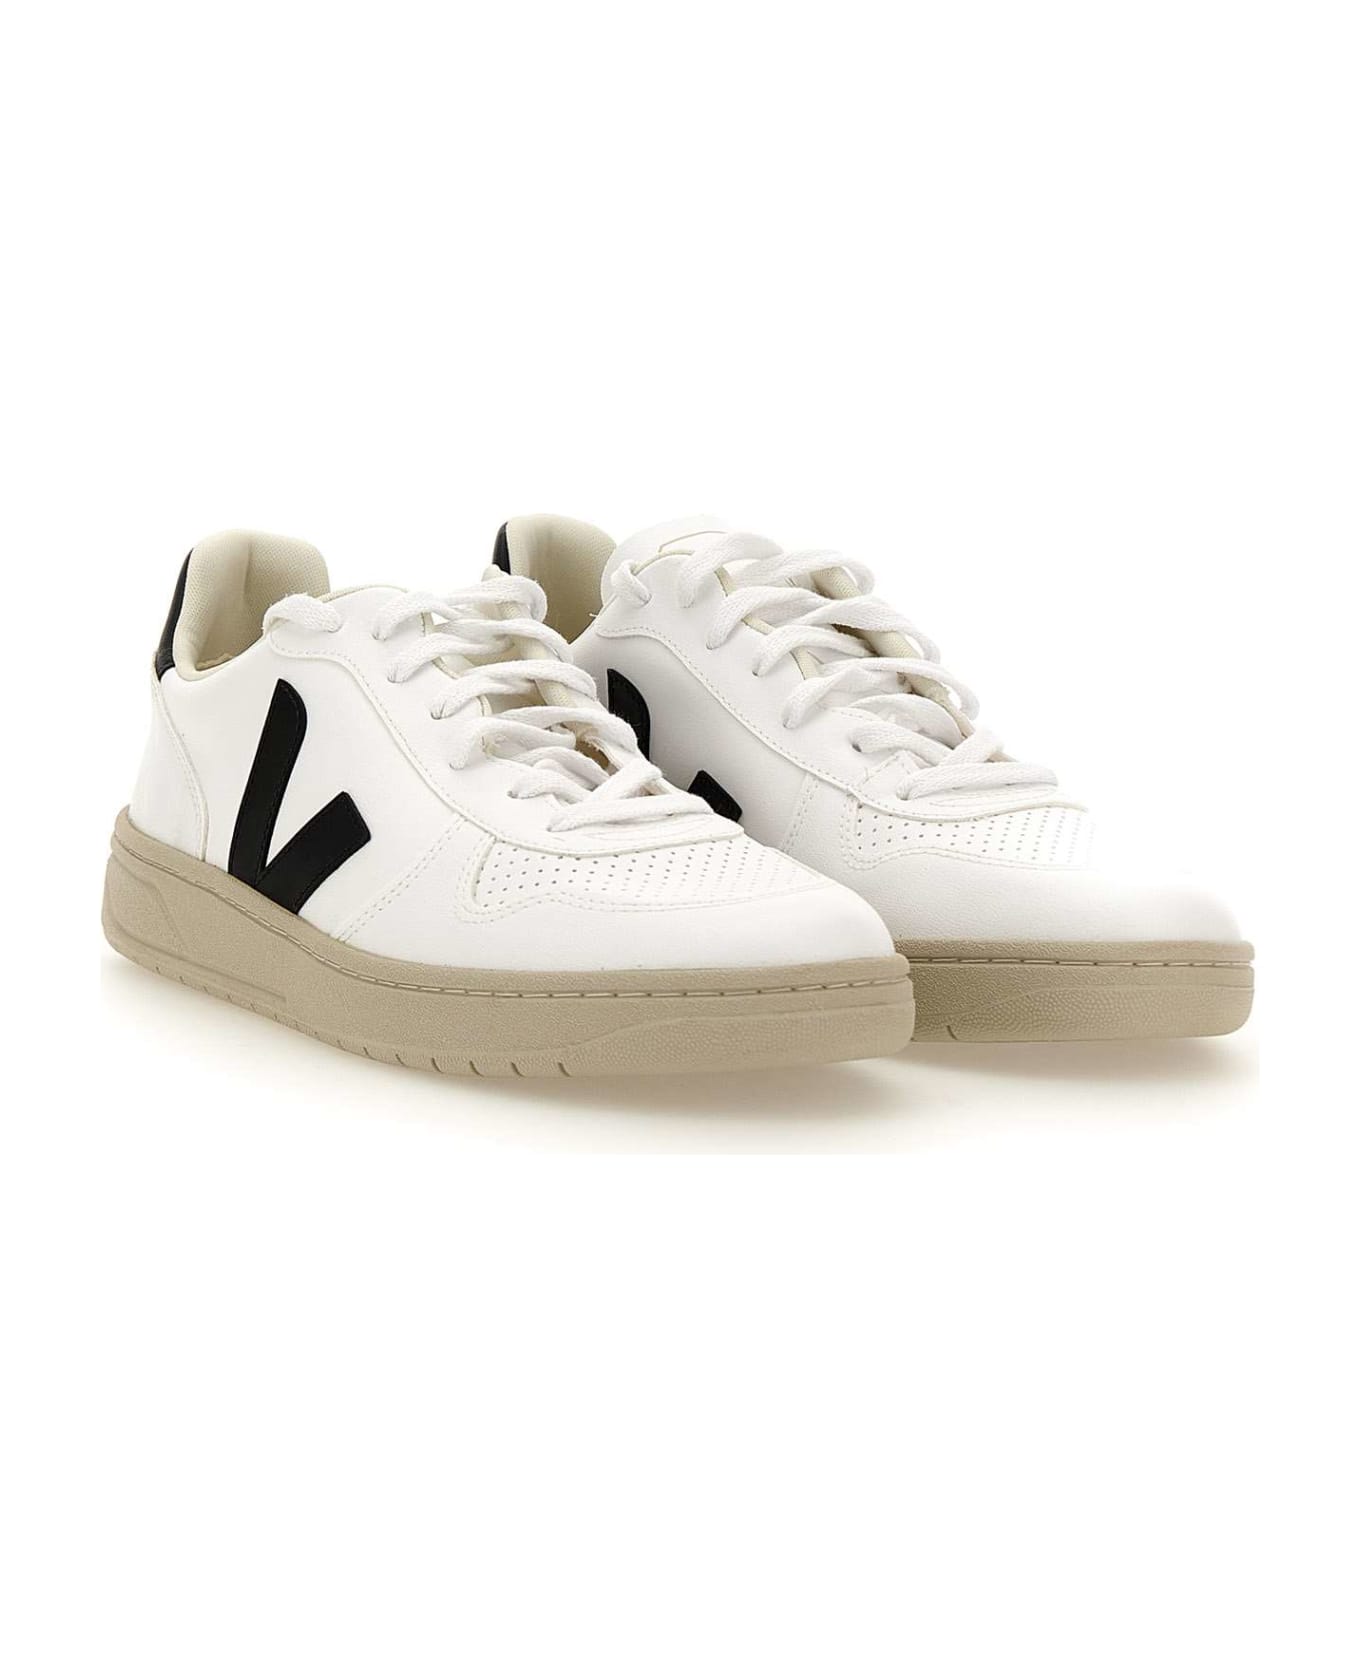 Veja "v-10 Cwl" Sneakers - WHITE-BLACK スニーカー